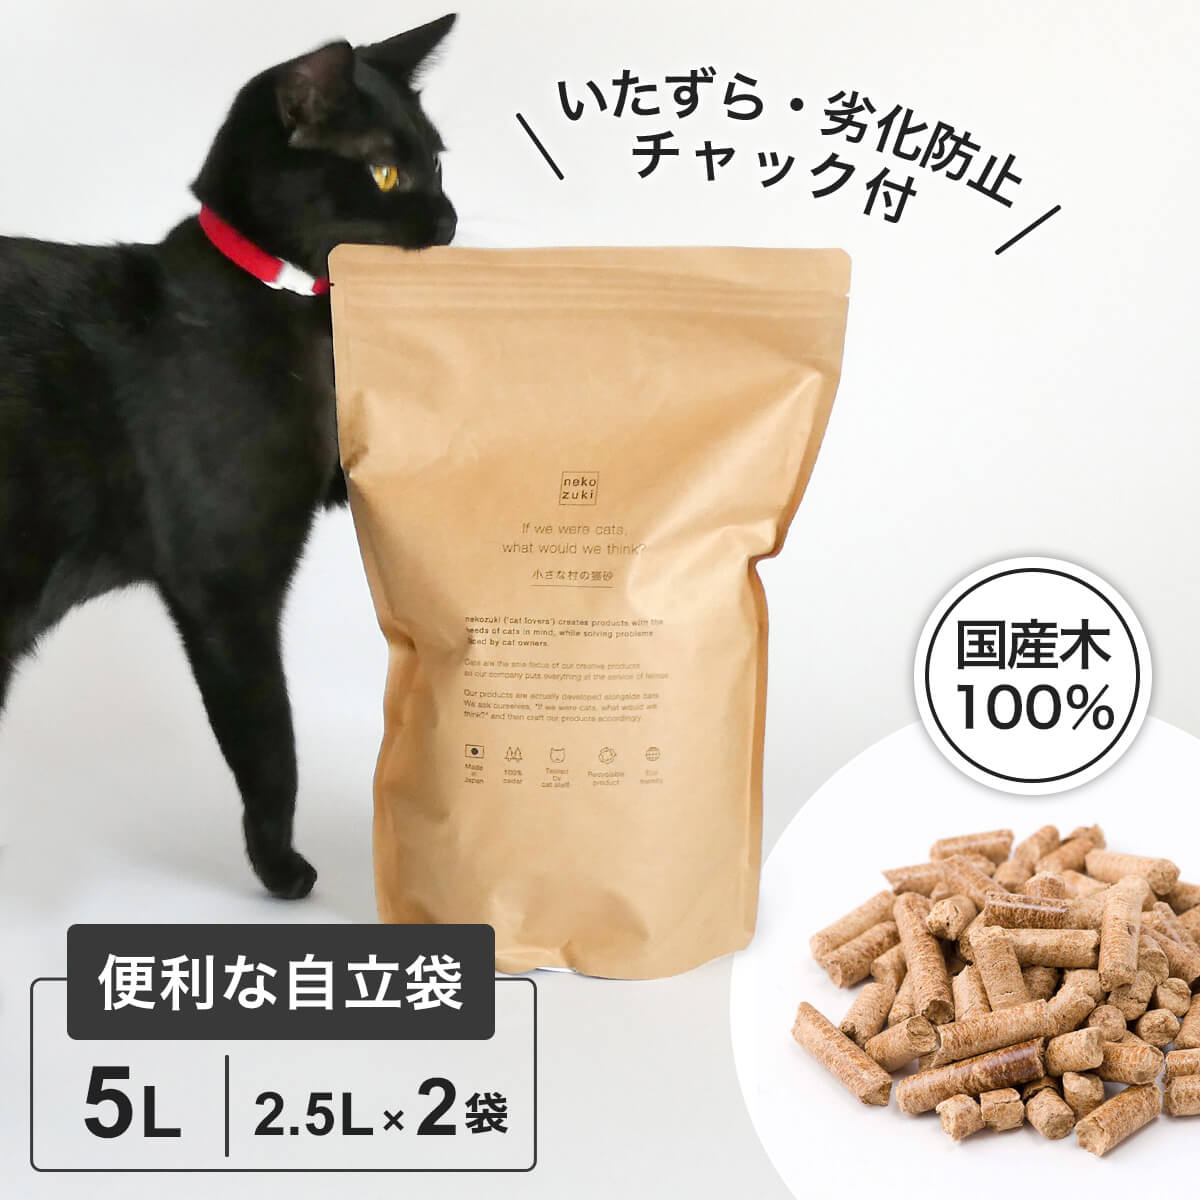 【お試し用】猫砂 木製 木質 ペレット ウッドチップ 国産 無添加 小さな村の猫砂 猫 猫の砂 お試し 5L システムトイレ向け 日本製